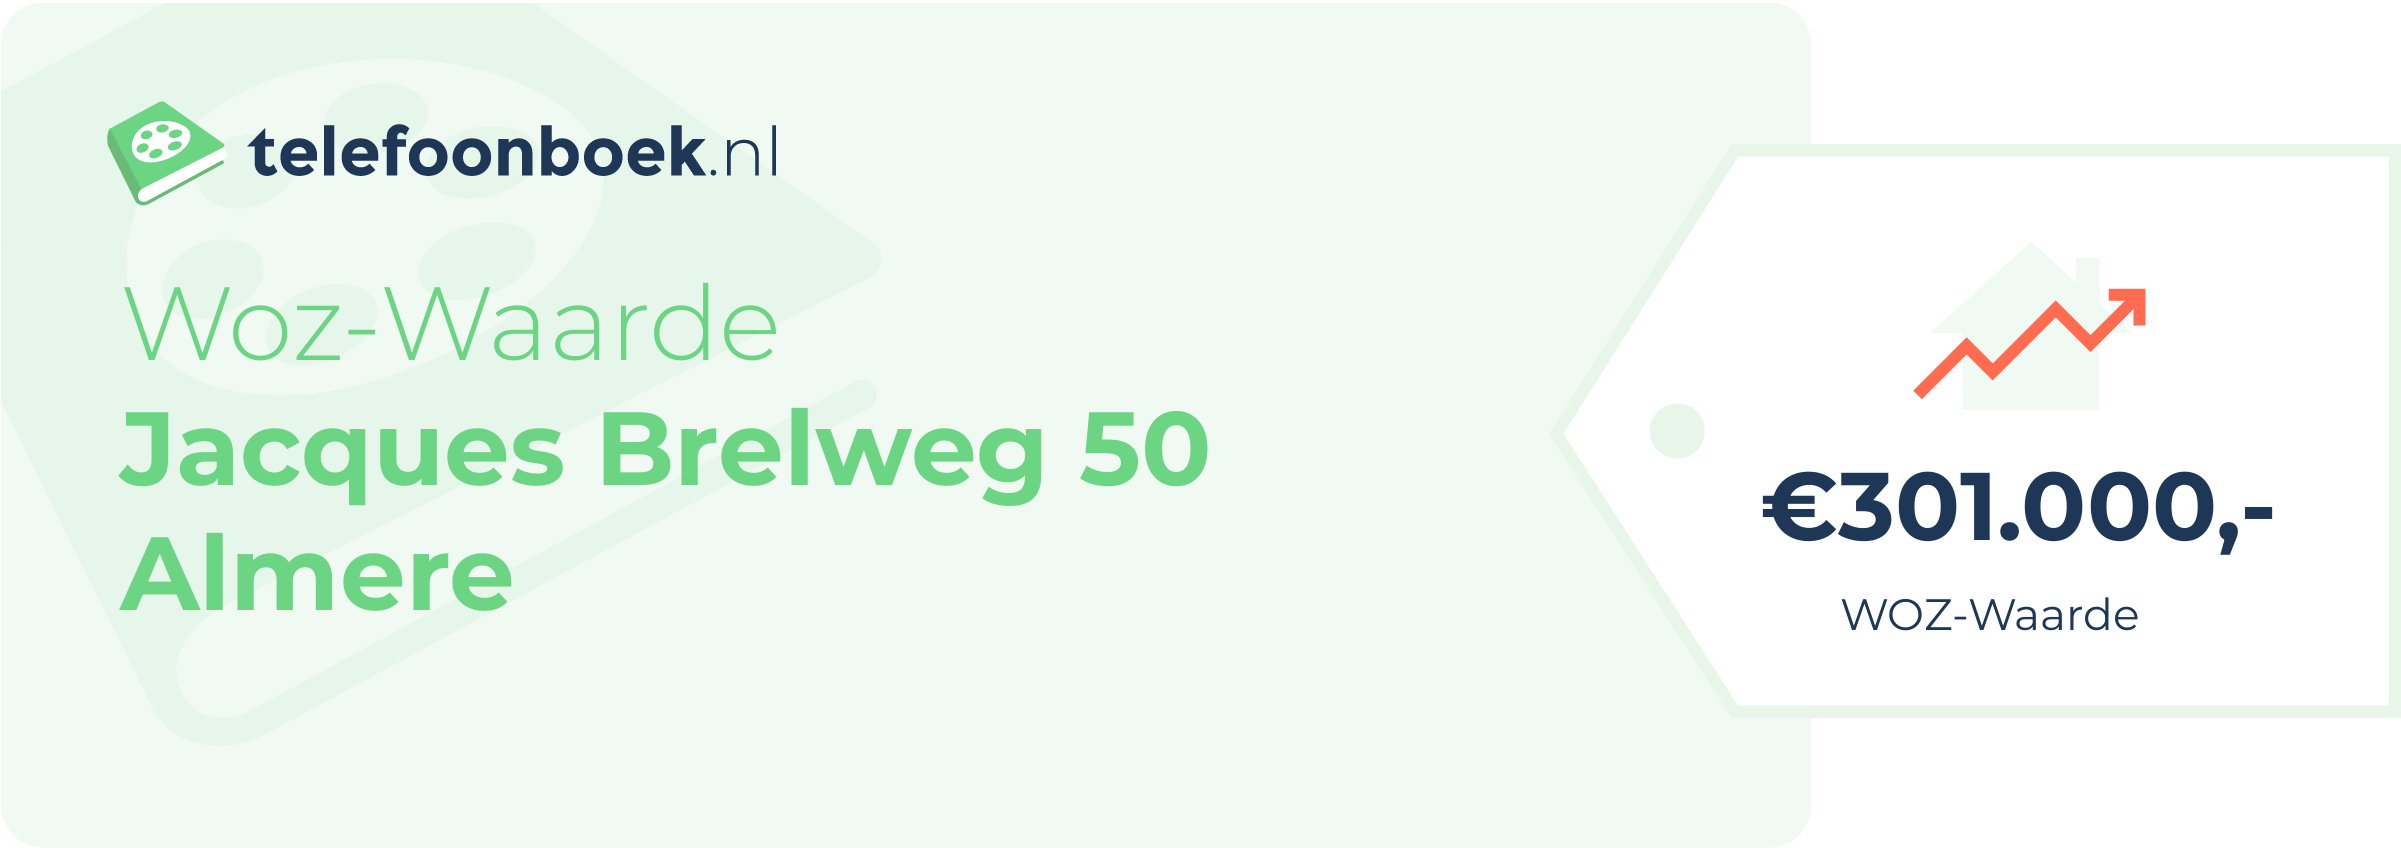 WOZ-waarde Jacques Brelweg 50 Almere